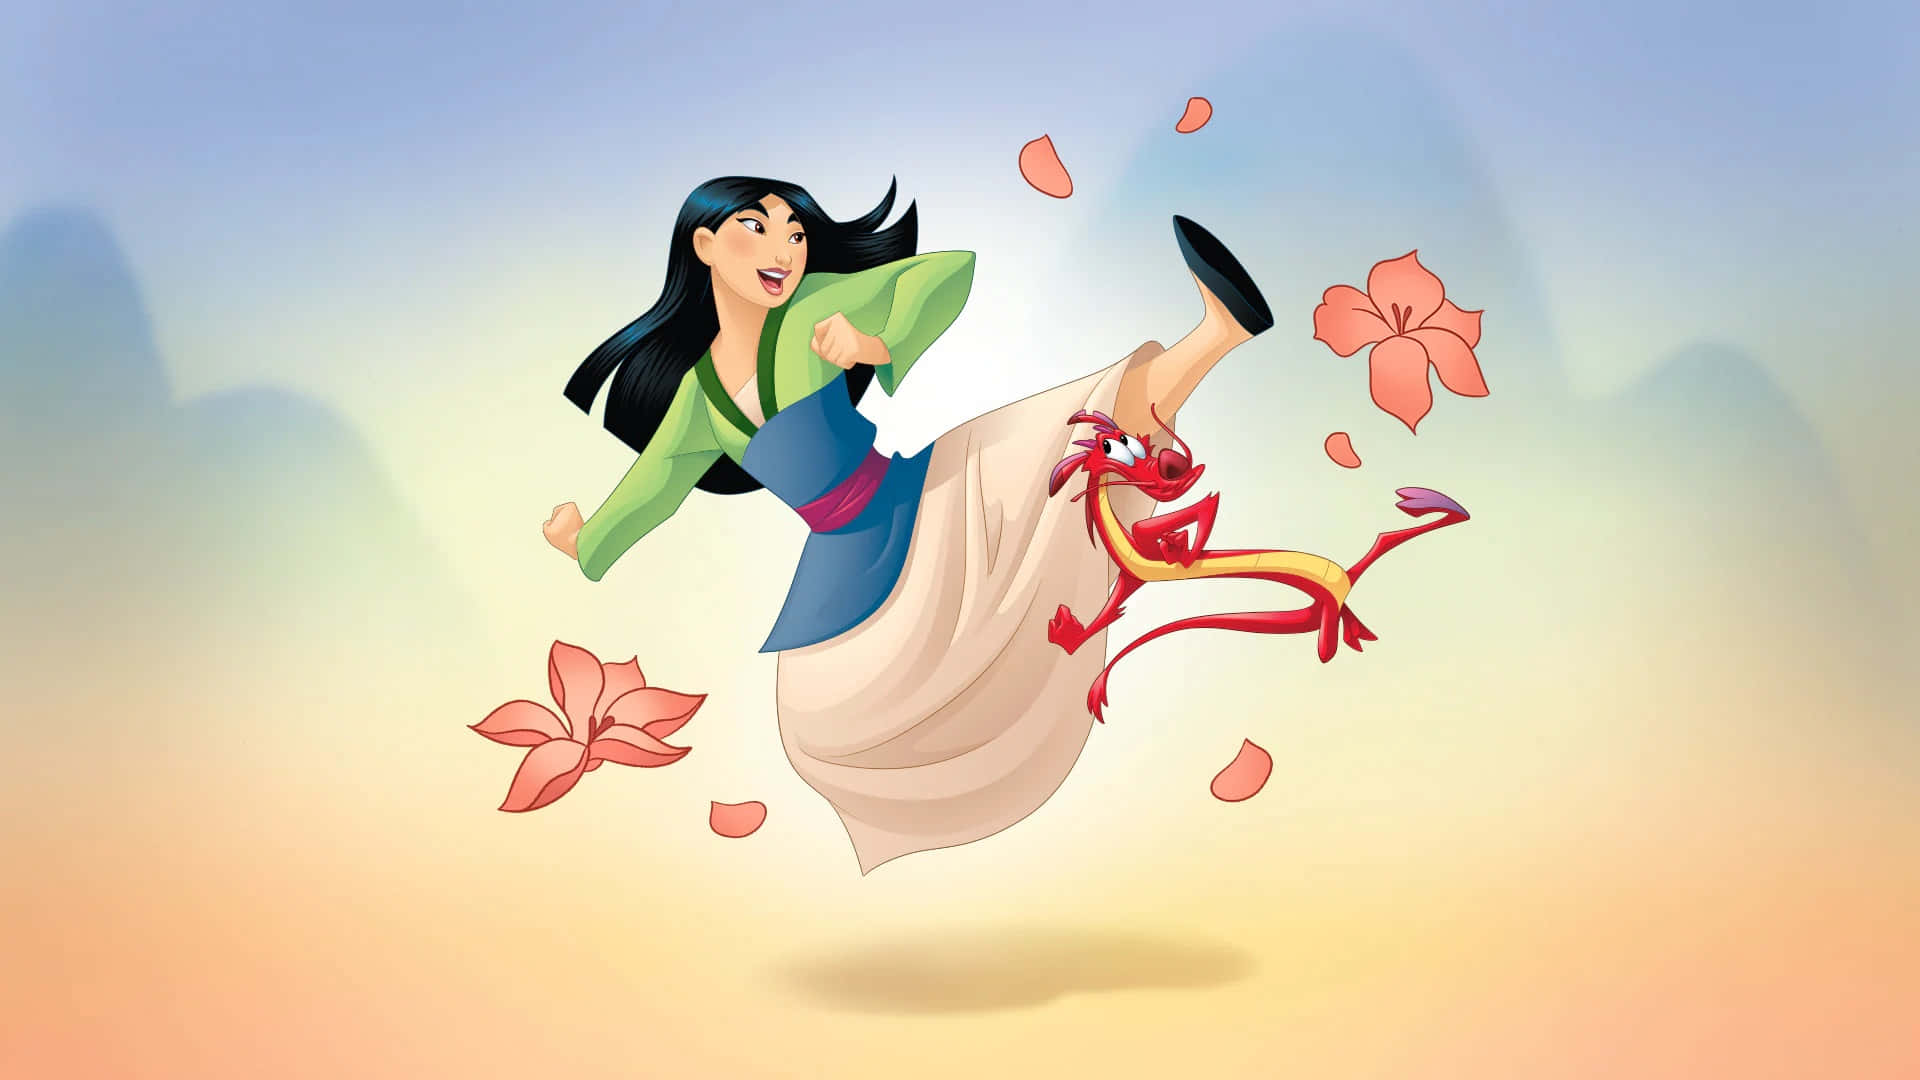 Imagenun Primer Plano De Liu Yifei Como Mulan En El Remake De Acción Real De Disney.